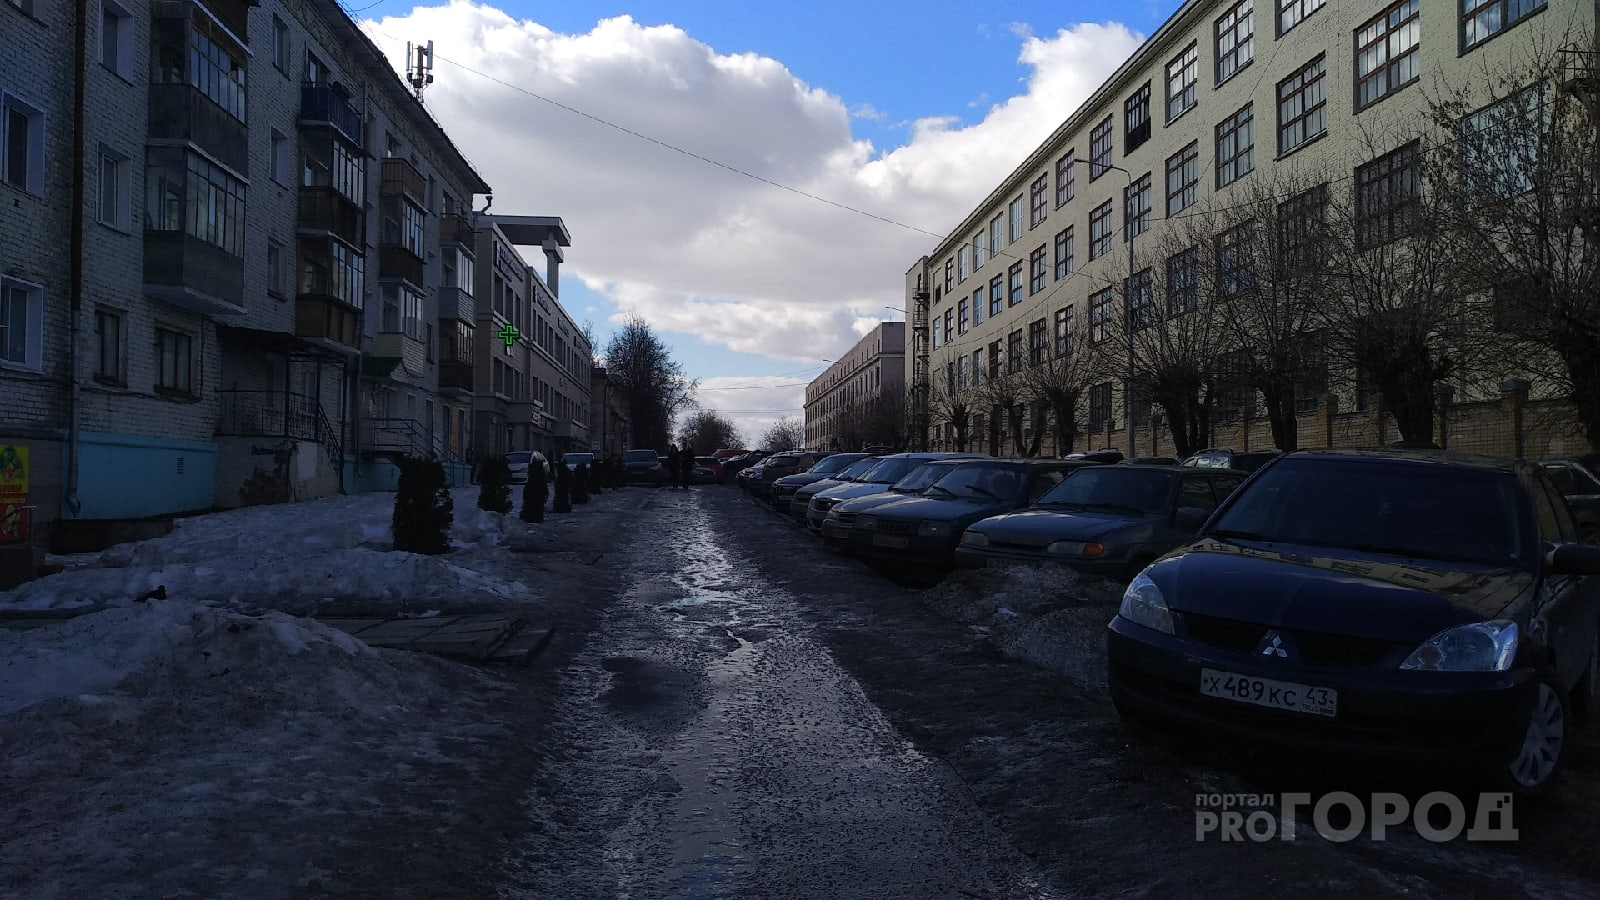 Синоптик рассказал о похолодании на неделе в Кирове и о том, когда ждать тепла